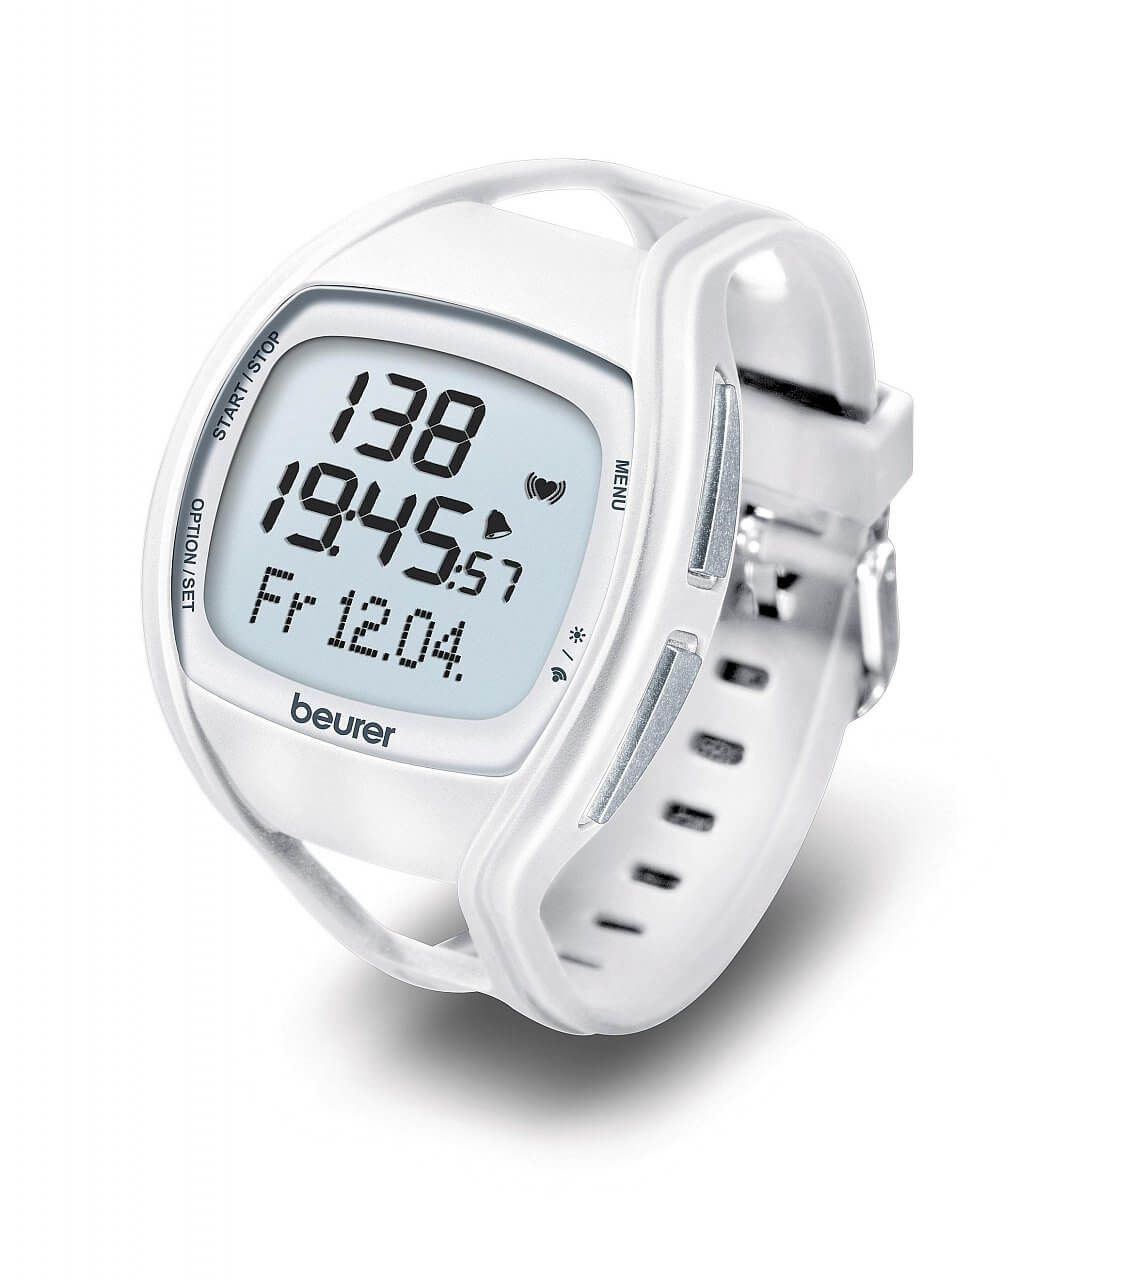 Sportovní hodinky s pulsoměrem Beurer PM45